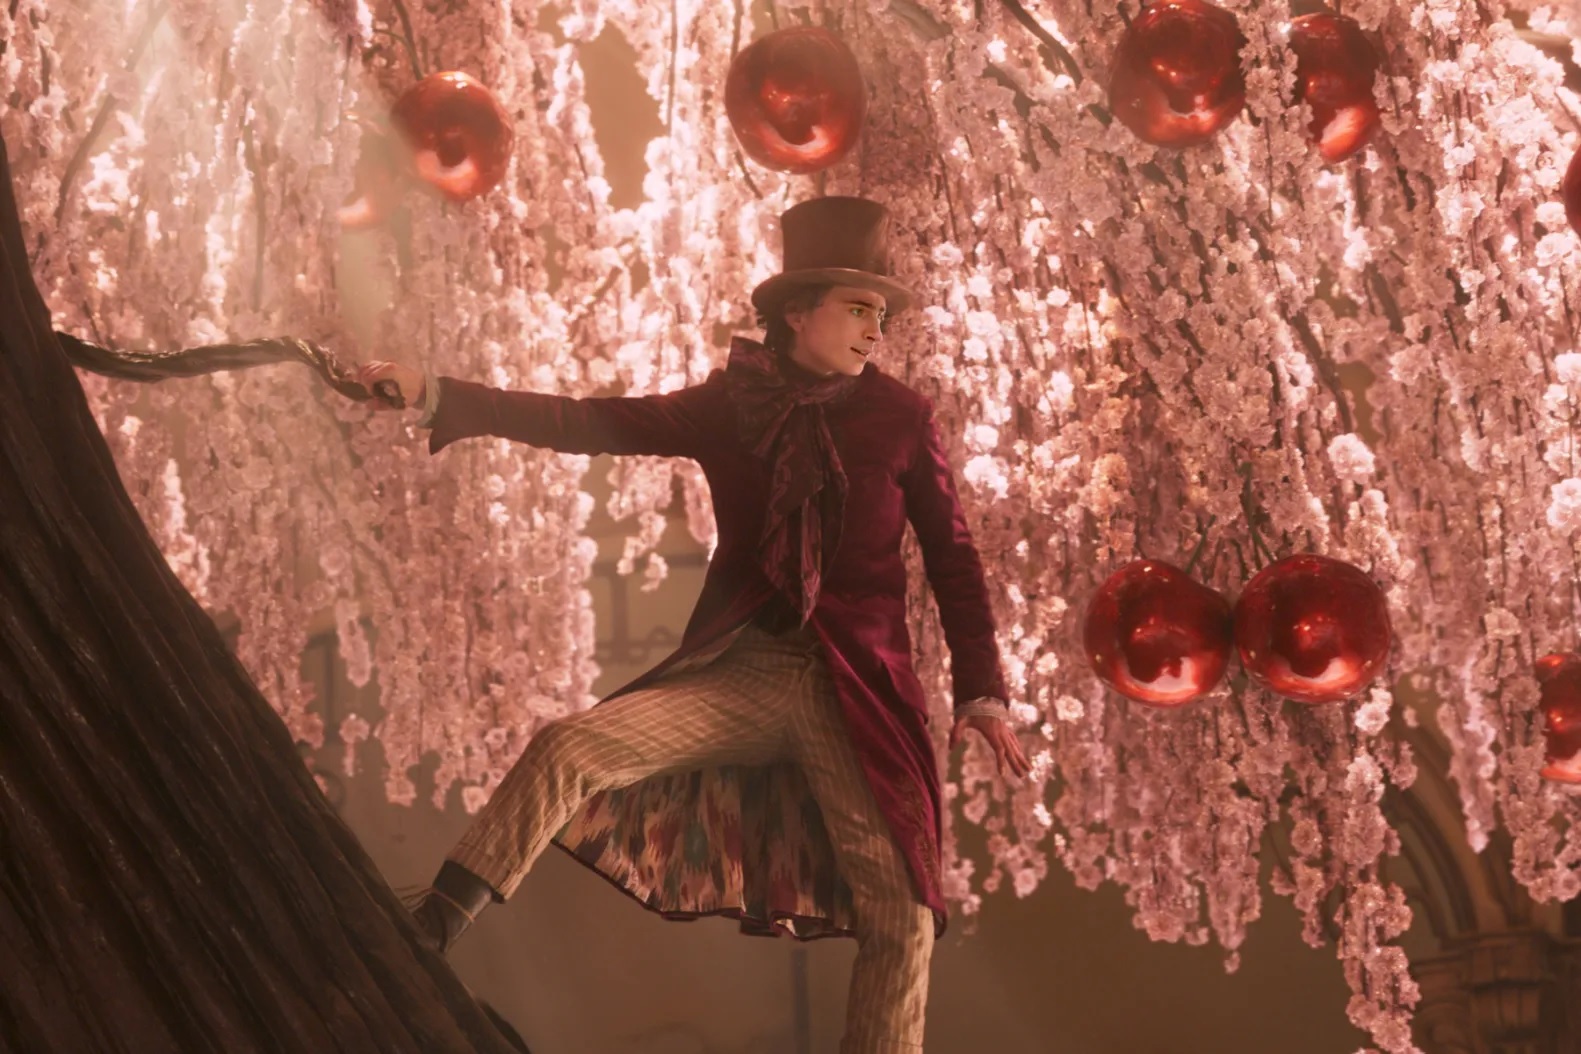 Auf dem Bild sieht man Willy Wonka, der auf einem Schokoladenbaum mit roas Blüten und großen, roten, glänzenden Kirschen steht.